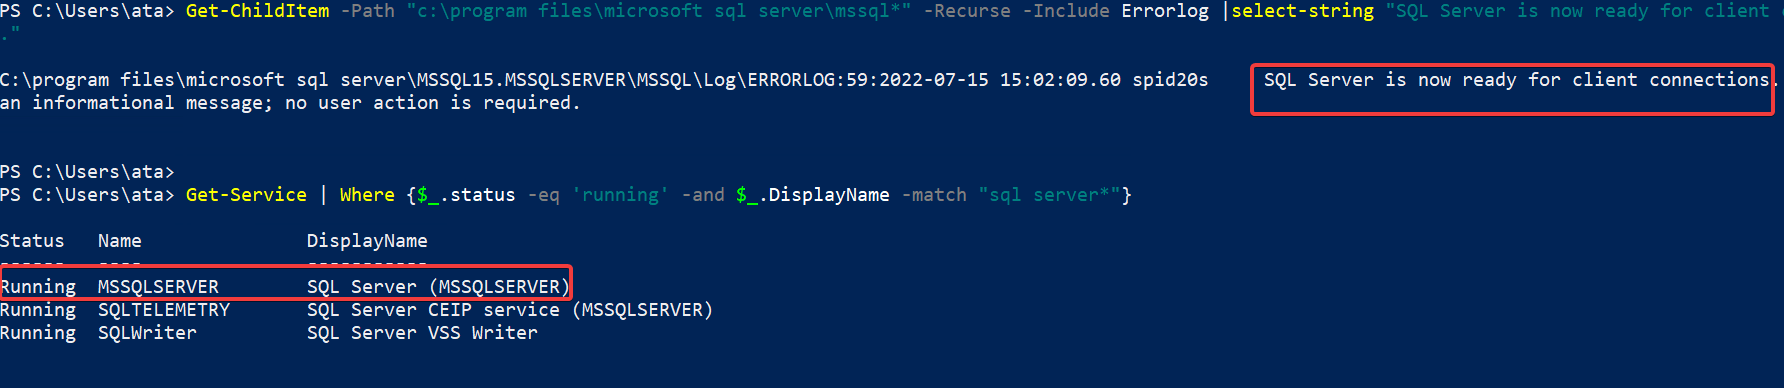 Verifying the SQL Server instance is running for Azure Data Studio